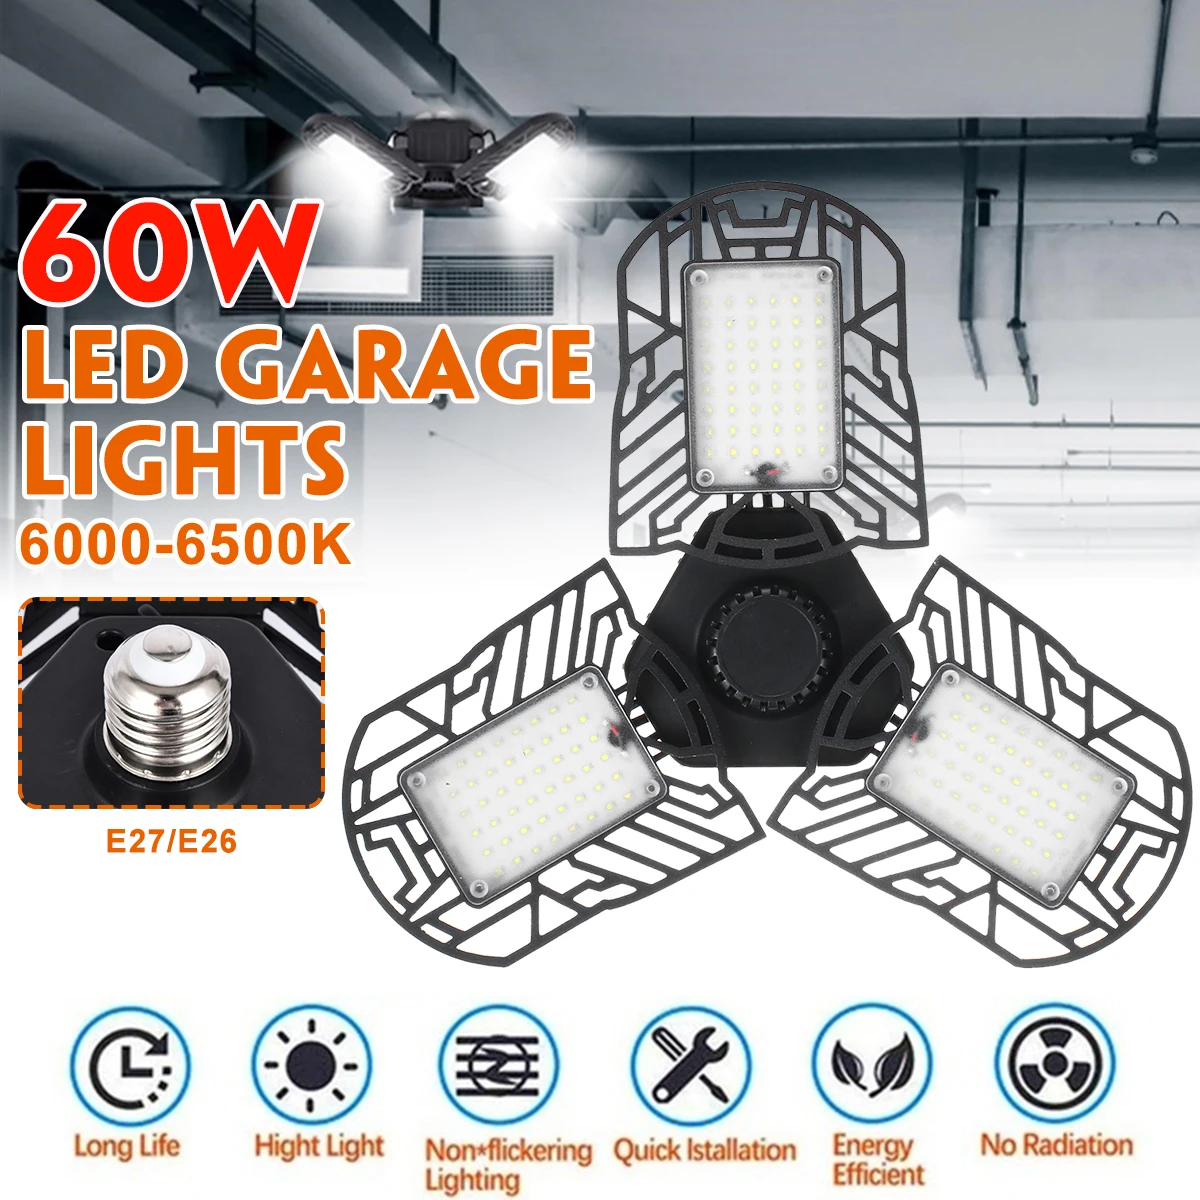 60 Вт 6000лм 144 шт. светодиодный деформируемый светильник гаражный светильник AC170-265V светодиодный шахтерский светильник для гаража/чердака/подвала/дома